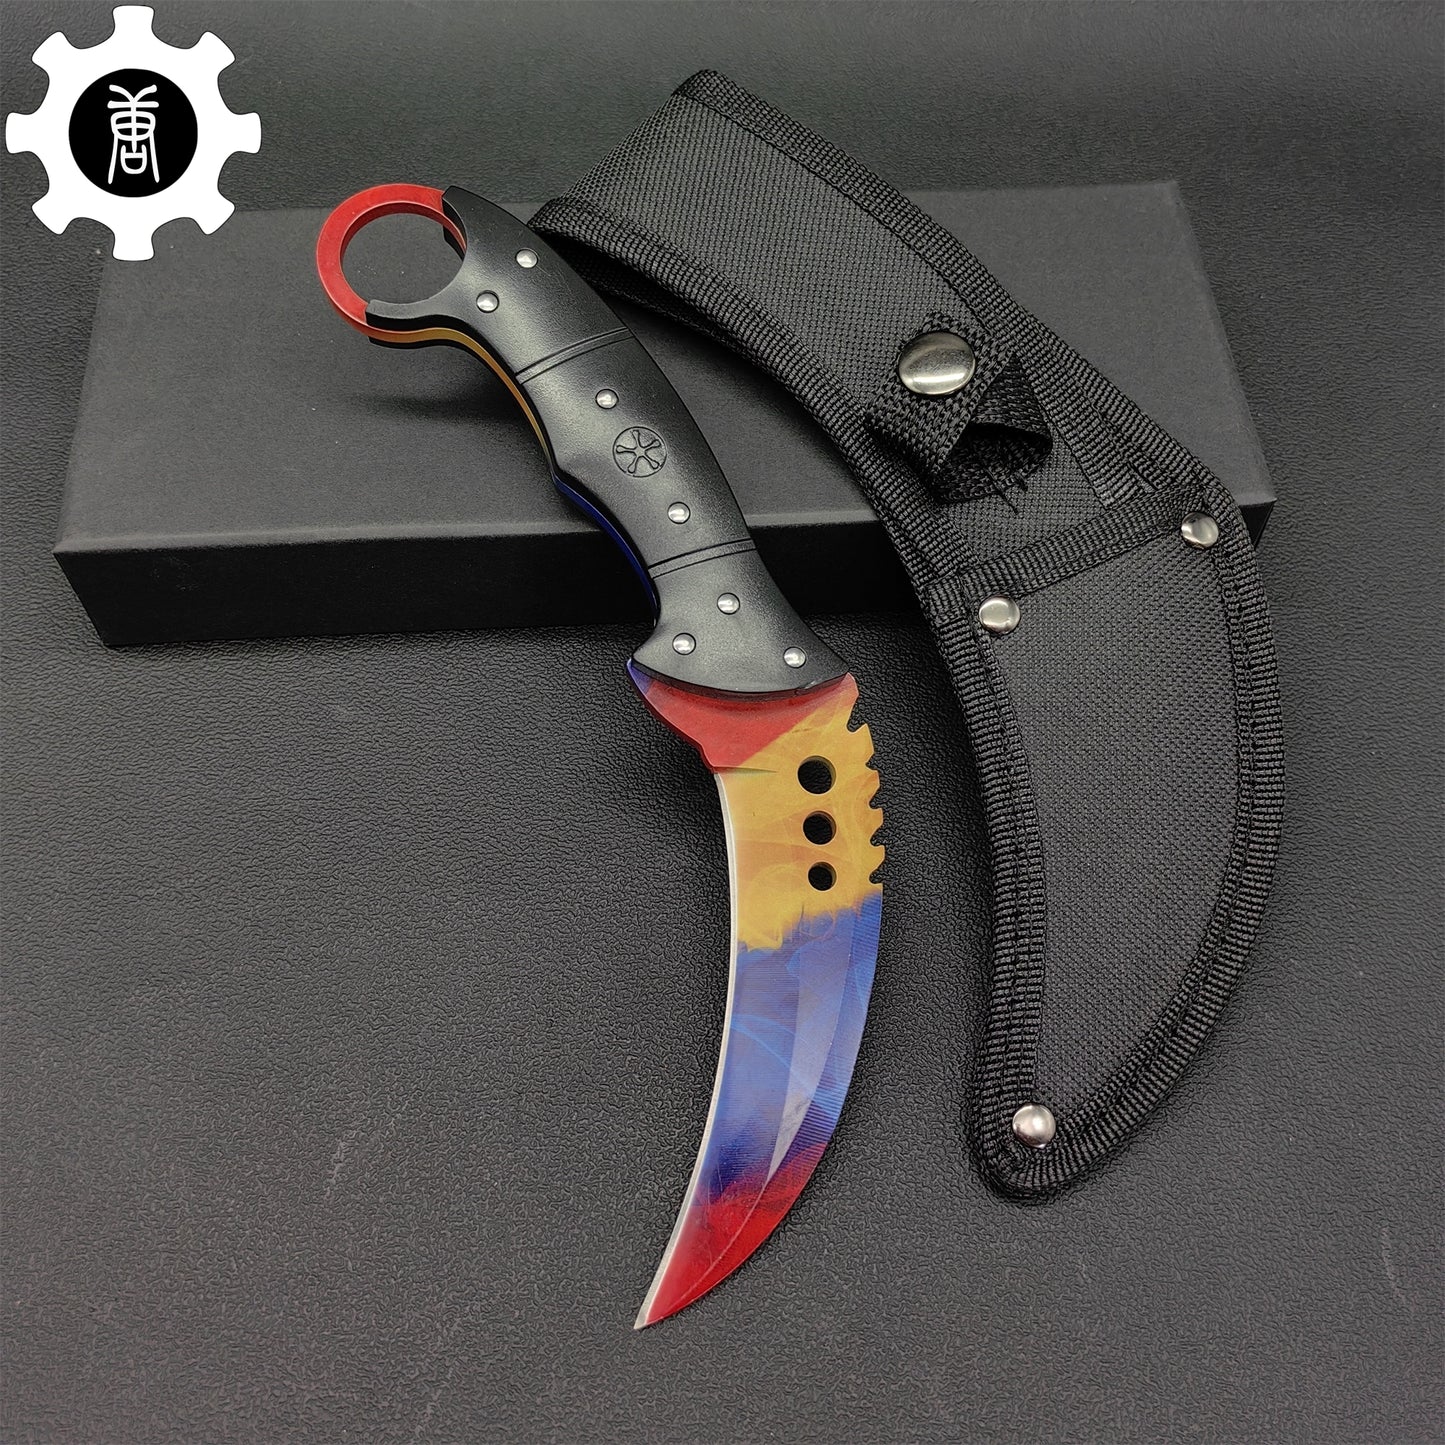 Talon Knife Sharp Blade Knife 5 In 1 Pack